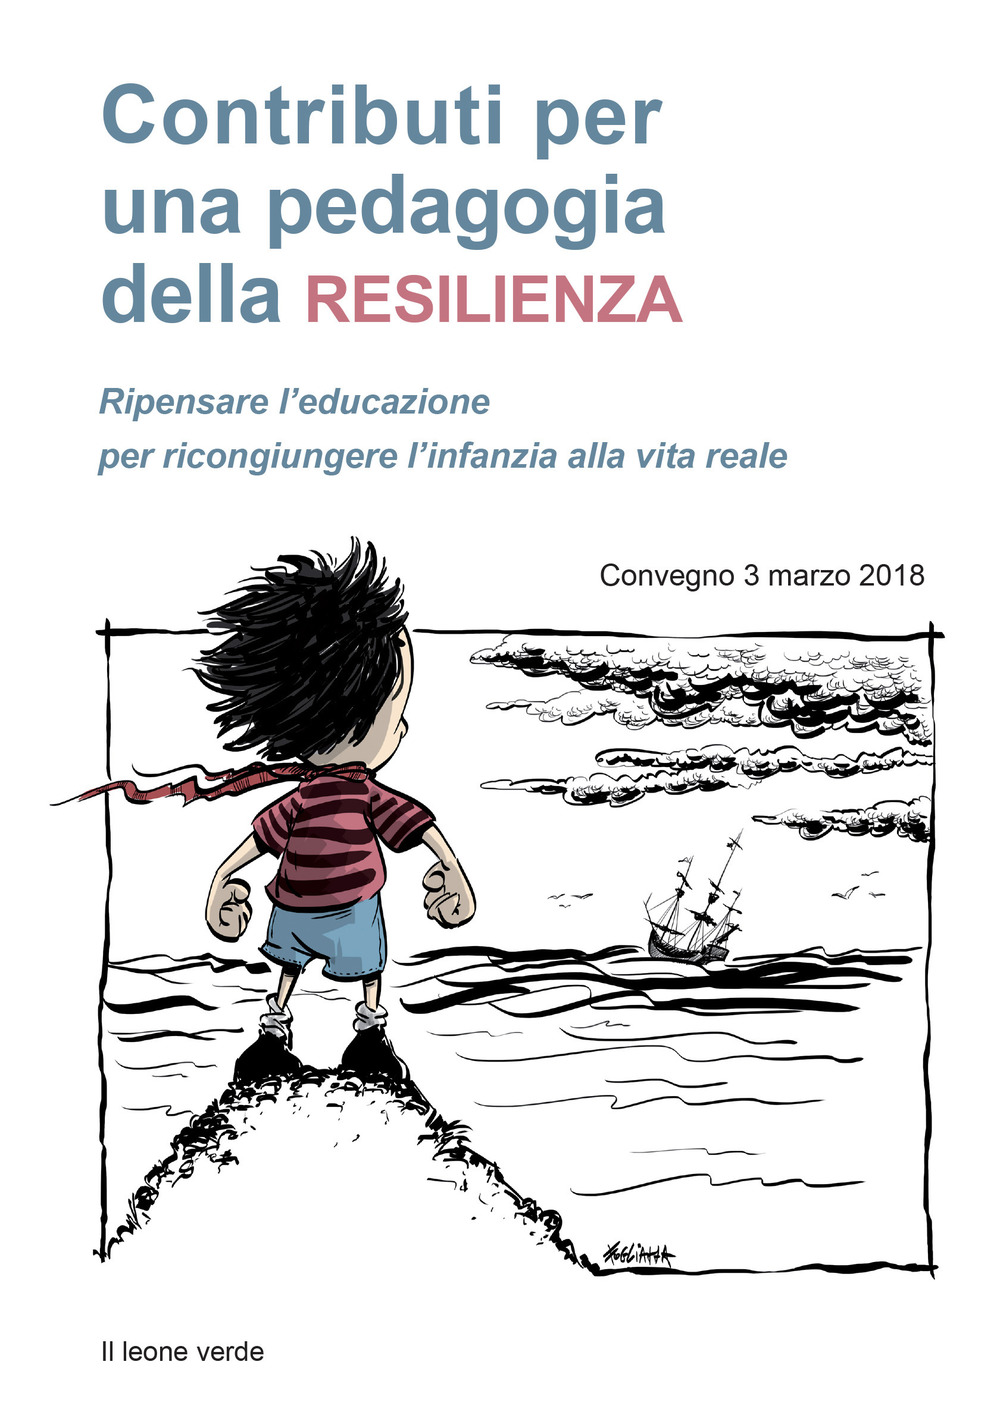 Contributi per una pedagogia della resilienza. Ripensare l'educazione per ricongiungere l'infanzia alla vita reale. Convegno (3 marzo 2018)